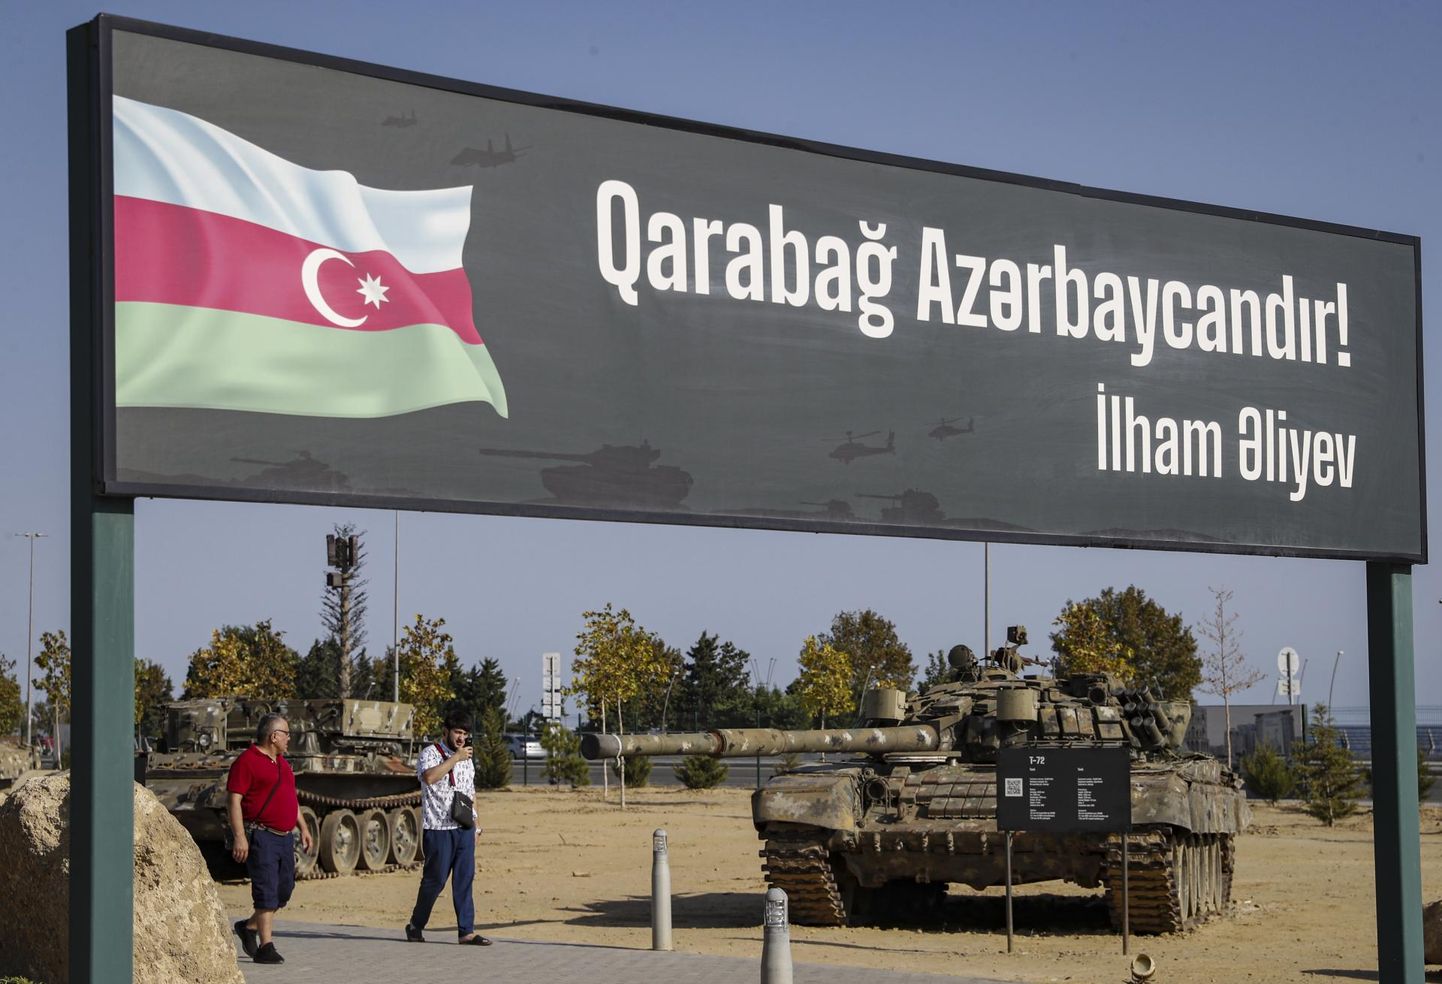 Loosung kirjaga «Karabahh kuulub Aserbaidžaanile! Ilham Älijev». Pilt on tehtud 5. septembril 2023 Bakuus 2020. aasta sõja ajal Armeenialt ära võetud sõjatrofeede pargis.